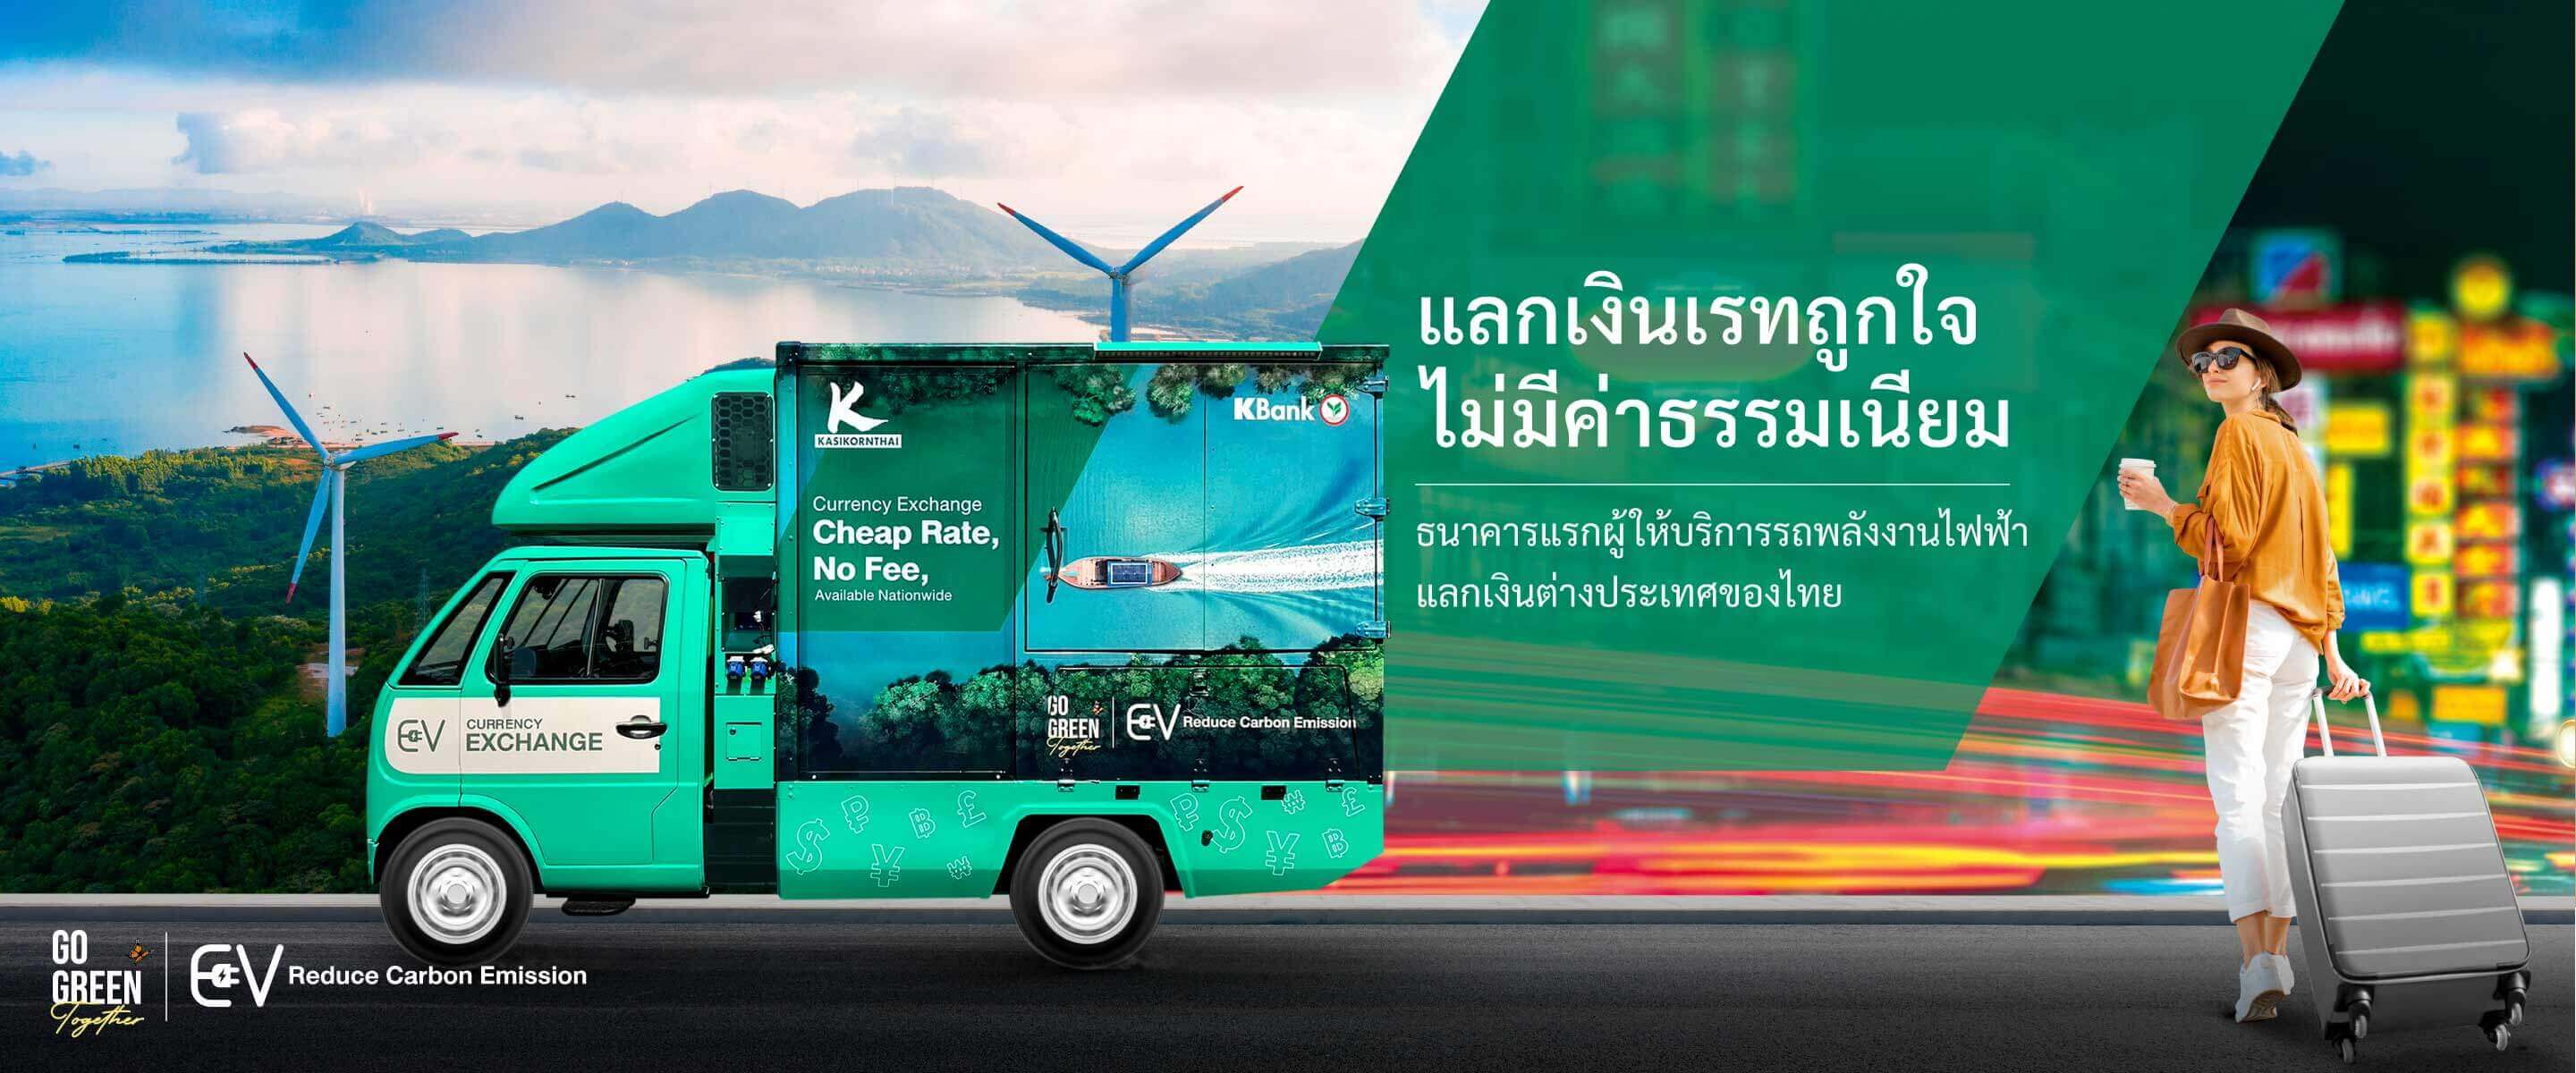 Go Green Together ชวนคนไทยรักษ์โลกไปด้วยกัน รถยนต์พลังงานไฟฟ้าแลกเปลี่ยนเงินตราต่างประเทศ ธนาคารกสิกรไทย สะดวกพร้อมให้บริการแลกเงิน